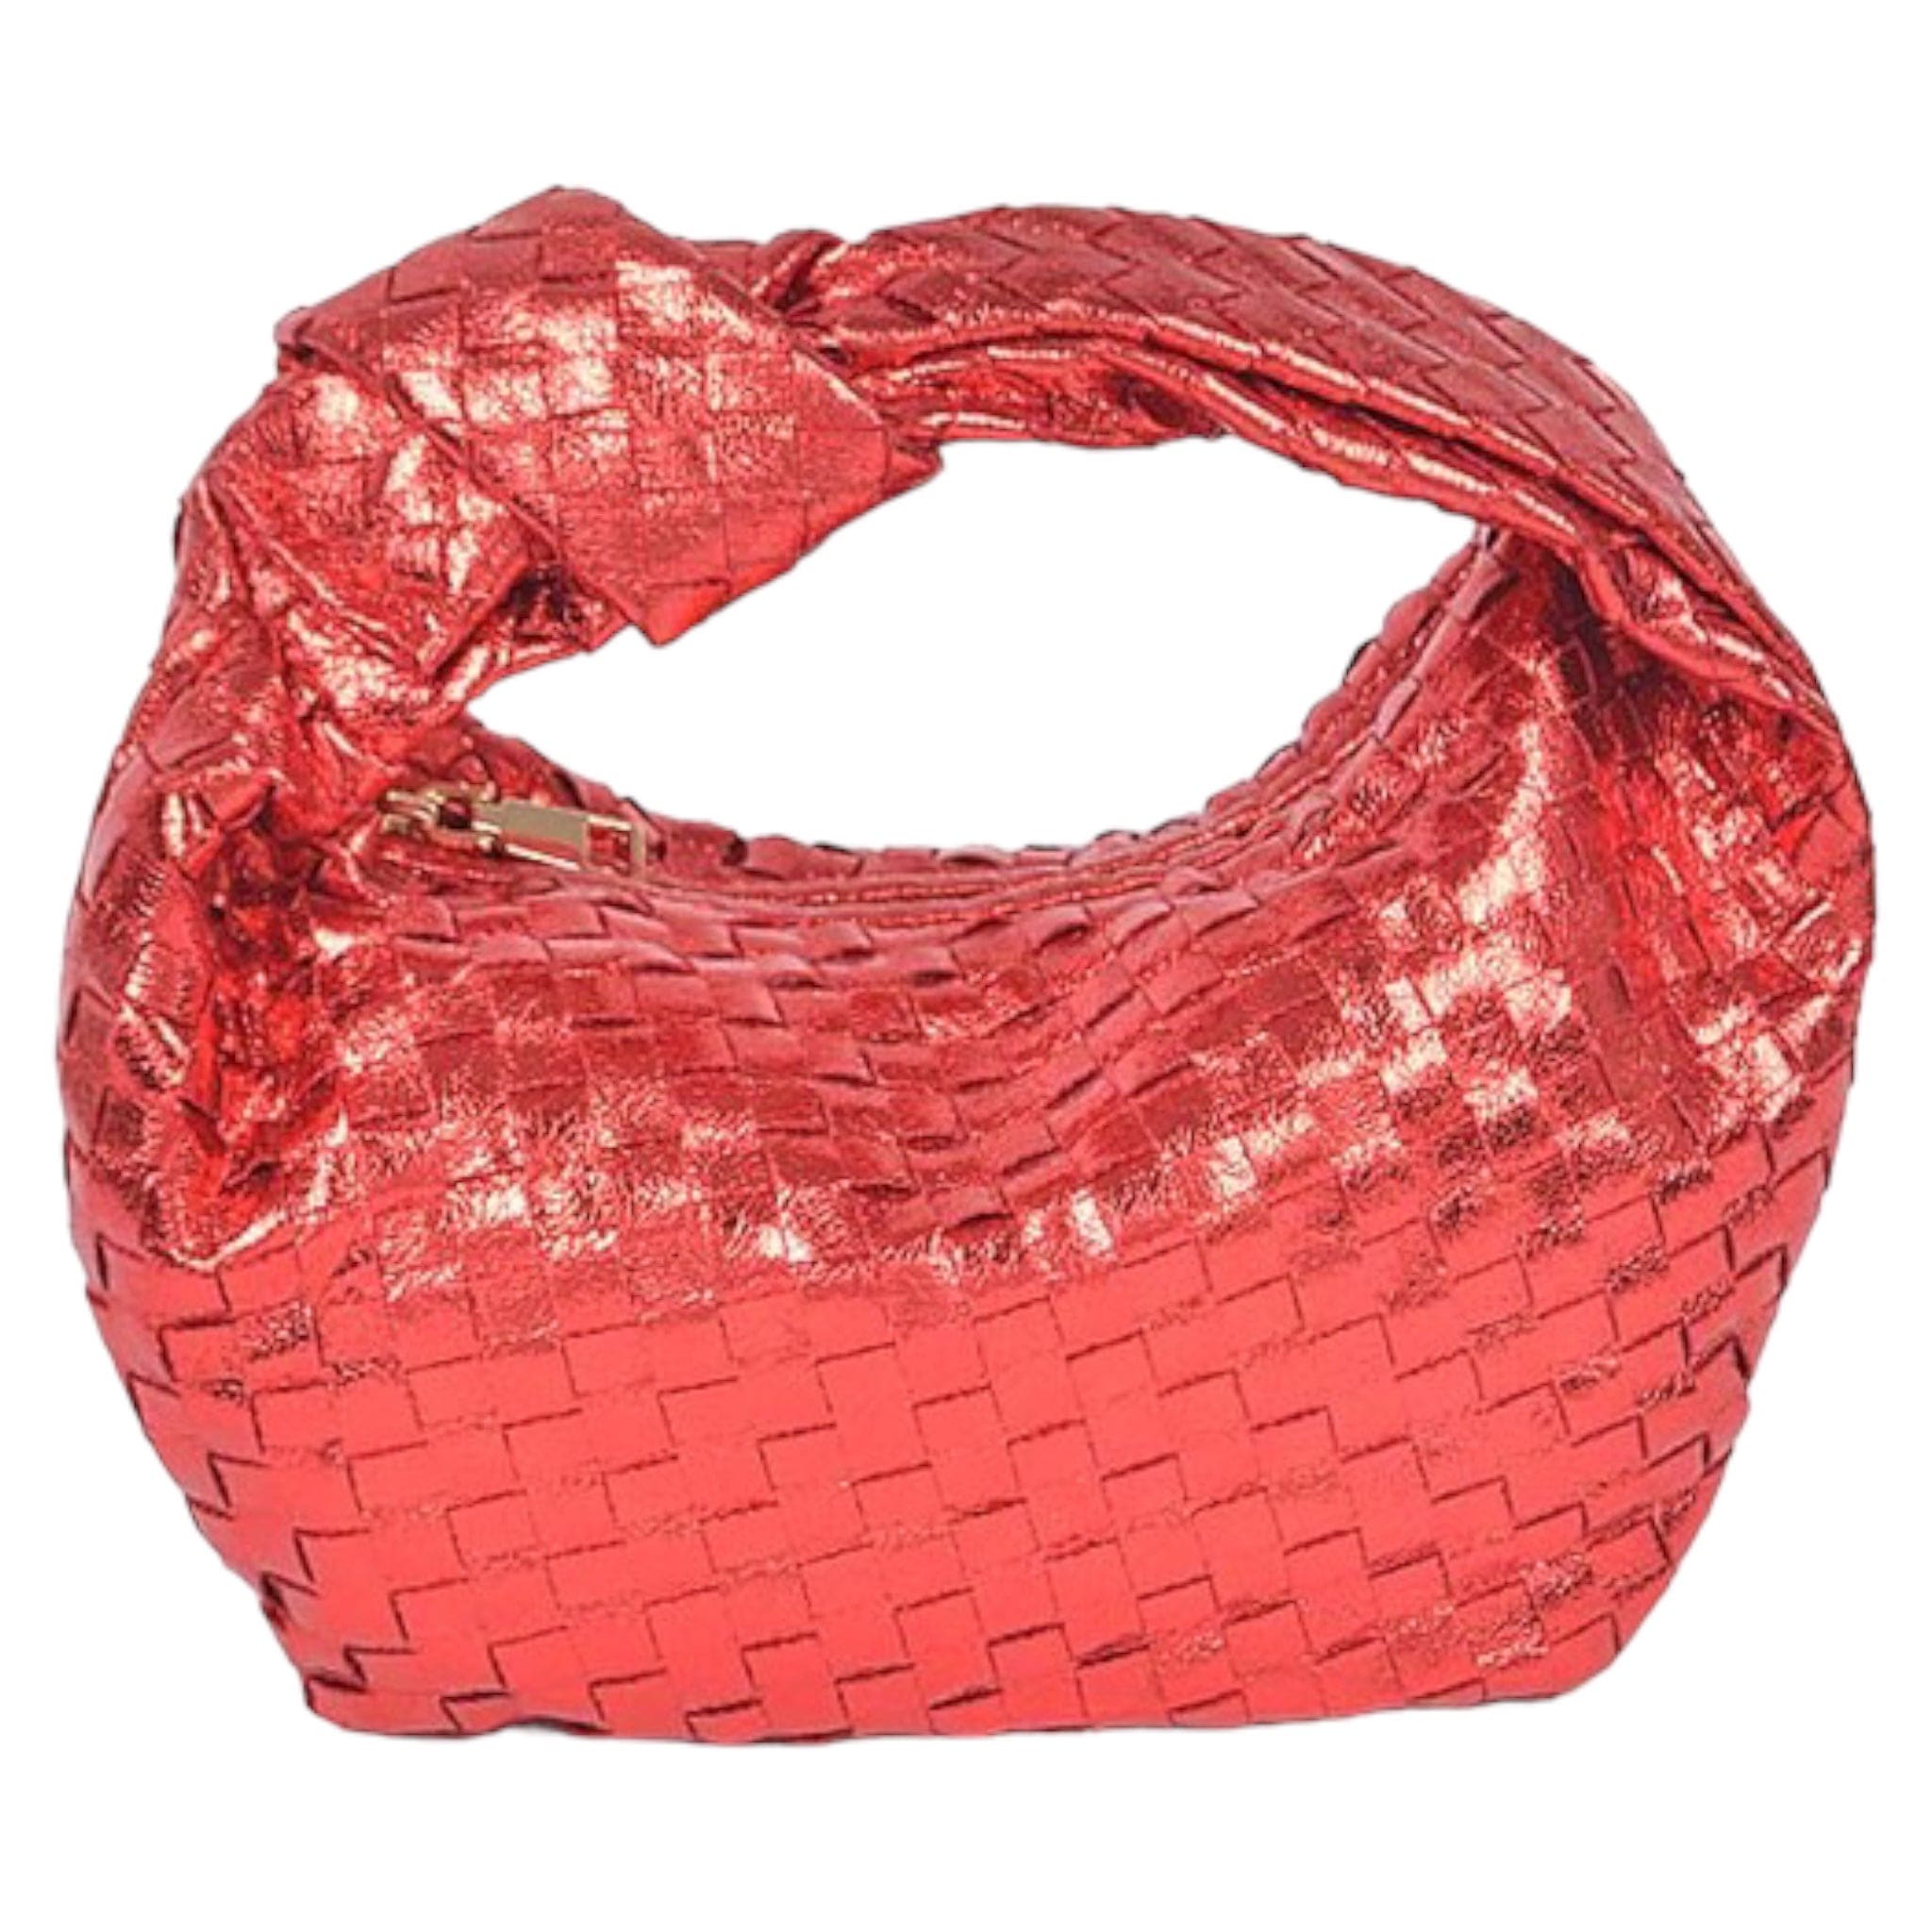 Red Metallic Braided Zip Bag